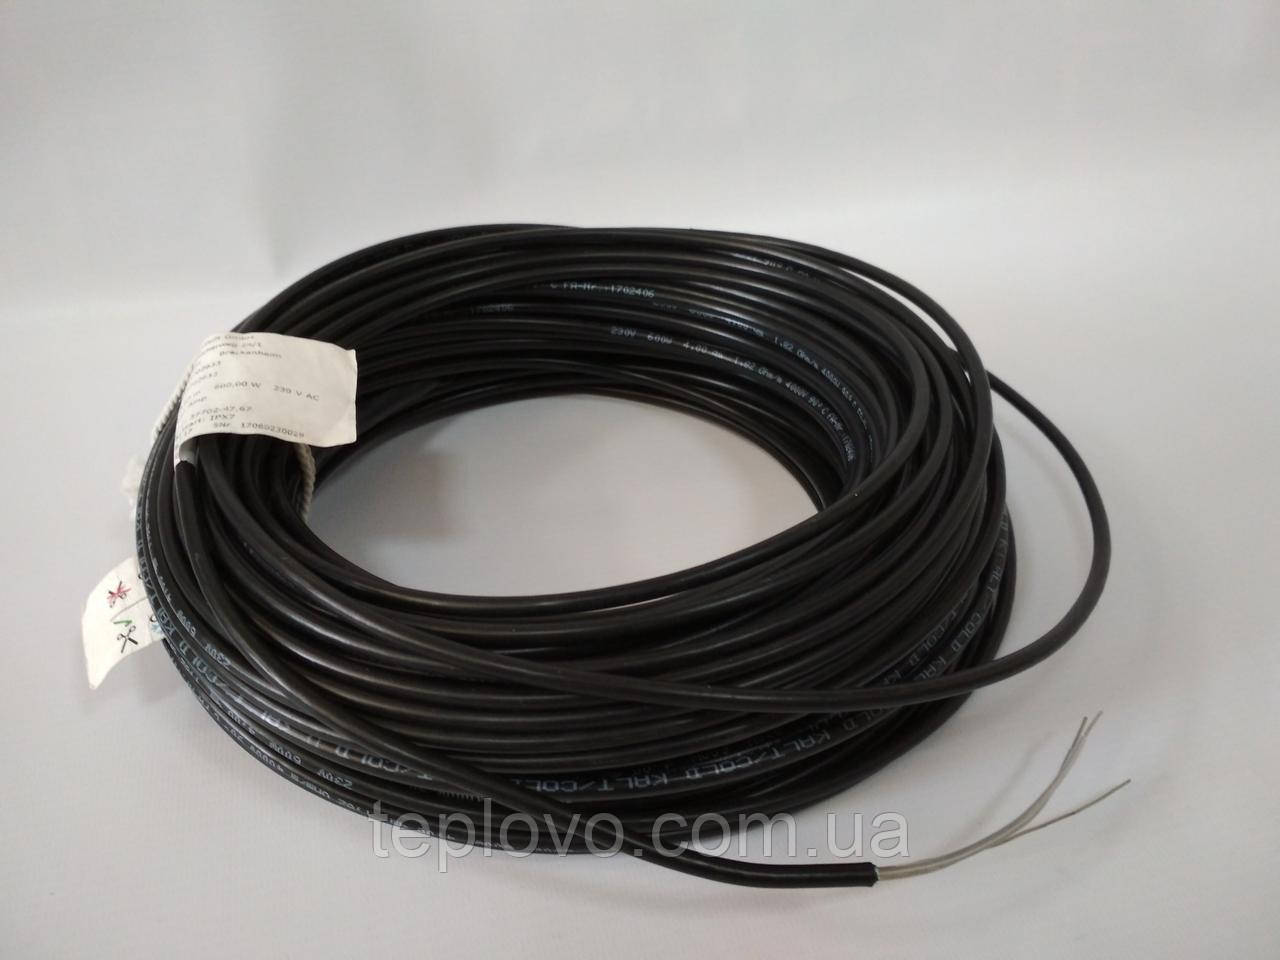 Двожильний нагрівальний кабель Hemstedt BR-IM 17, 600 Вт (2.6 - 4.3 м2), тепла підлога